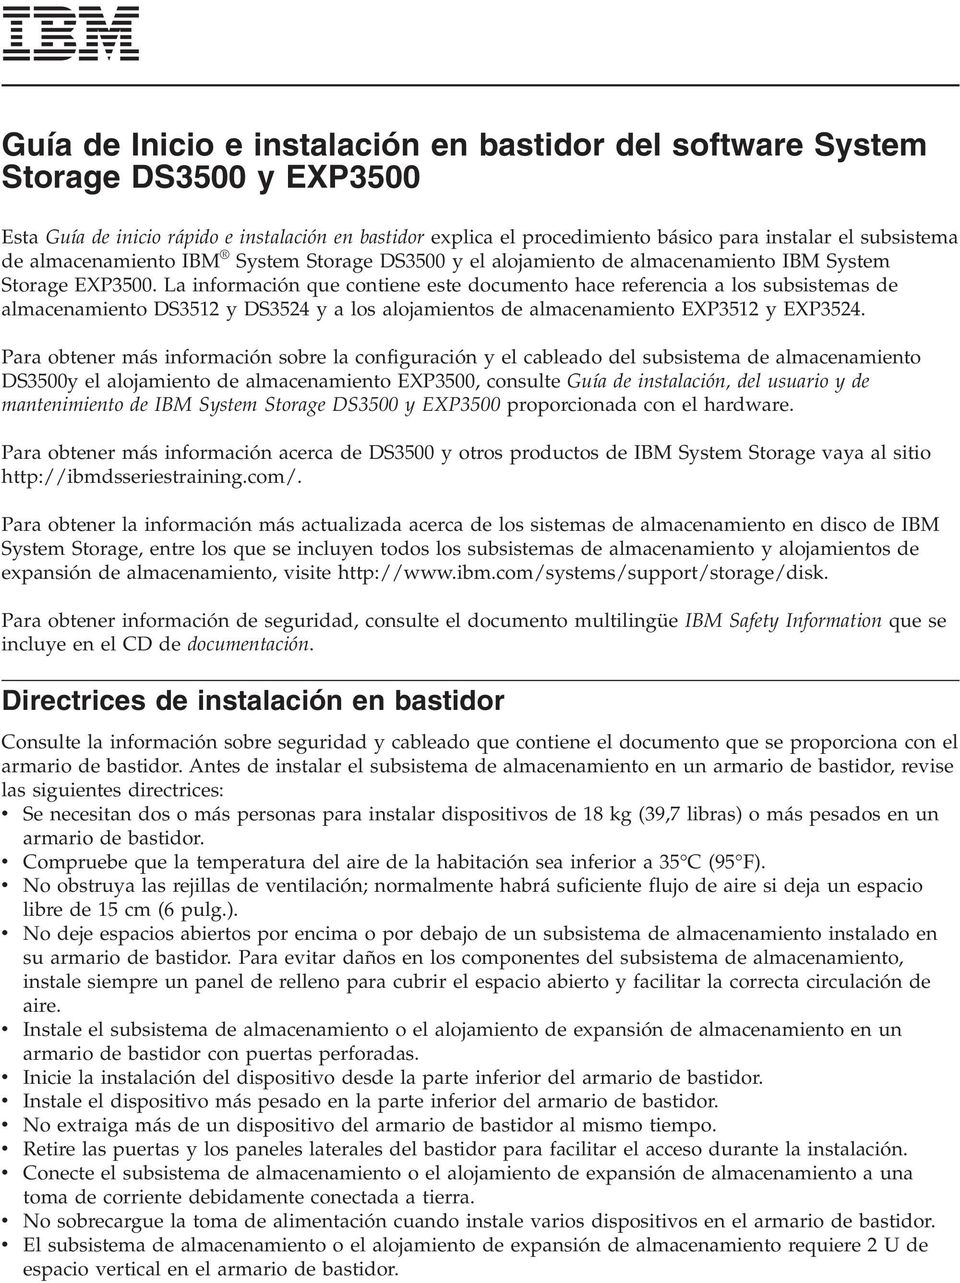 La información que contiene este documento hace referencia a los subsistemas de almacenamiento DS3512 y DS3524 y a los alojamientos de almacenamiento EXP3512 y EXP3524.